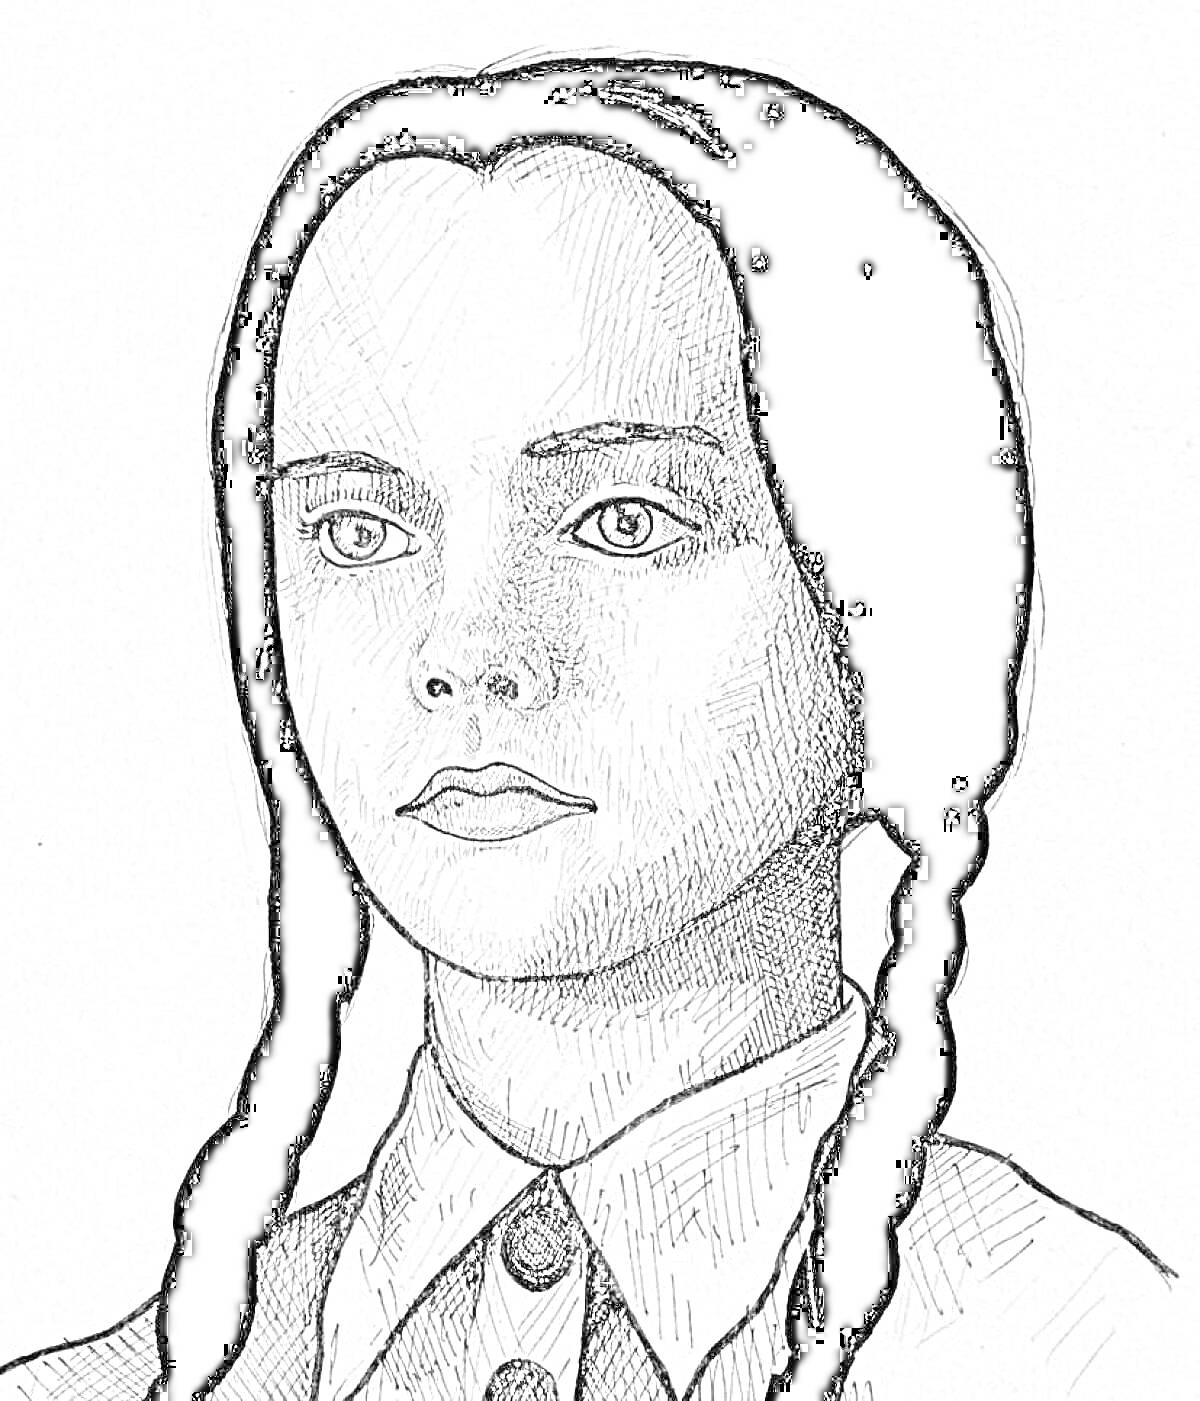 Раскраска Портрет девочки в черно-белых тонах с двумя косичками, в пуговичной рубашке